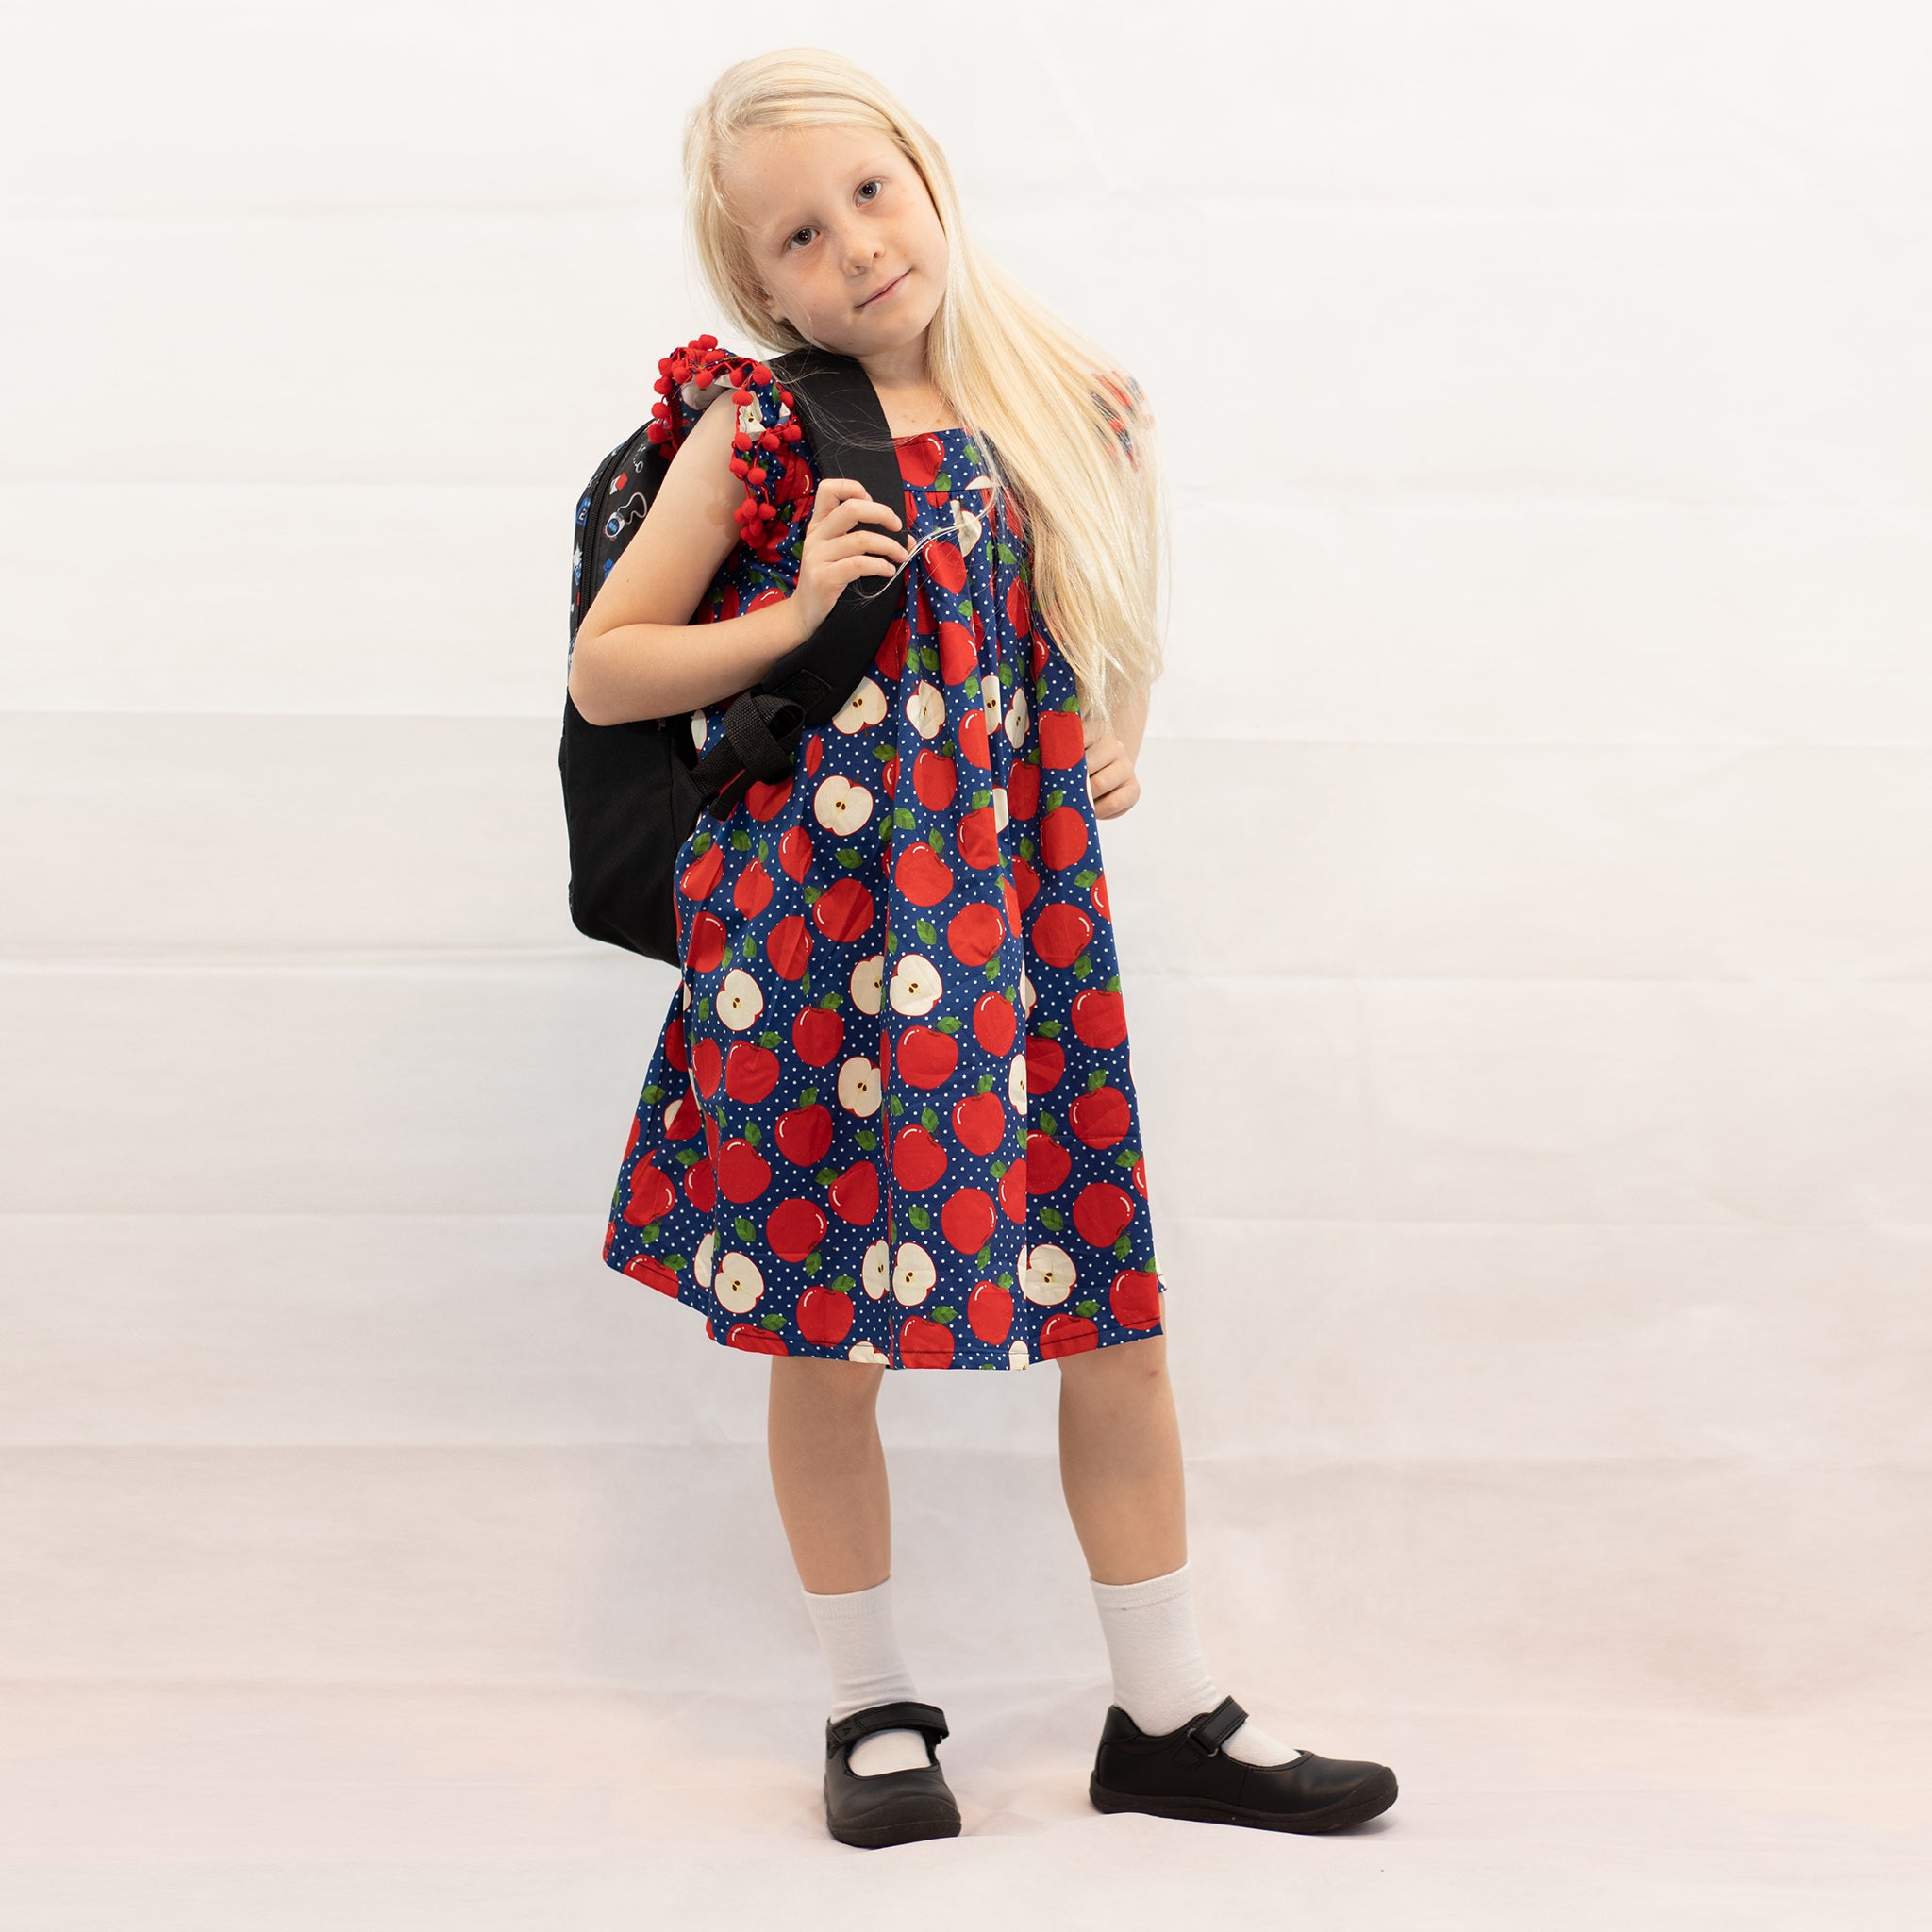 Toddler Little Girls Back to School Navy Polka Dot Apple Dress - Woven Cotton - Angeline Kids